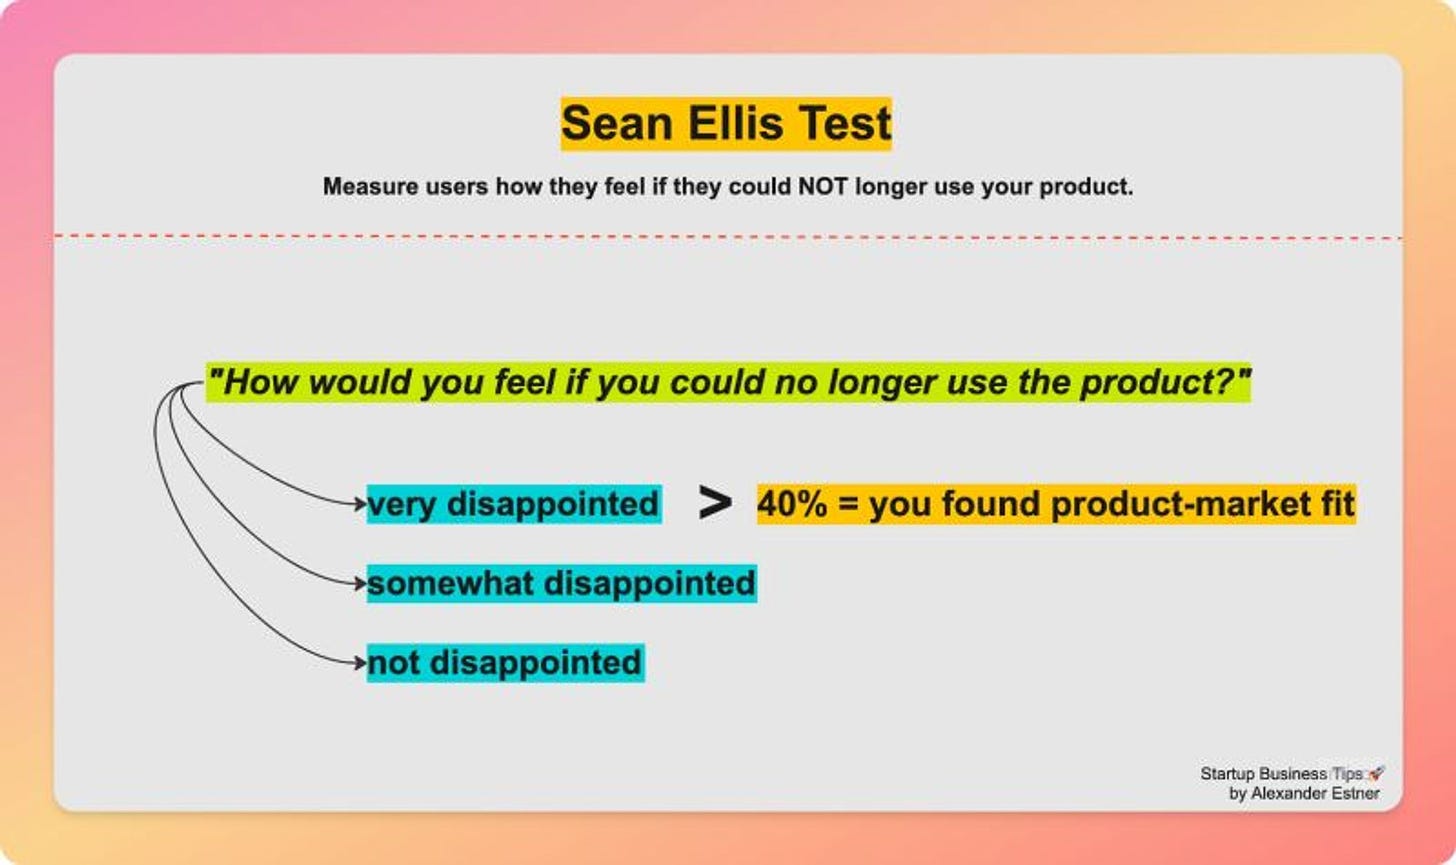 Sean Ellis Test to measure product-market fit